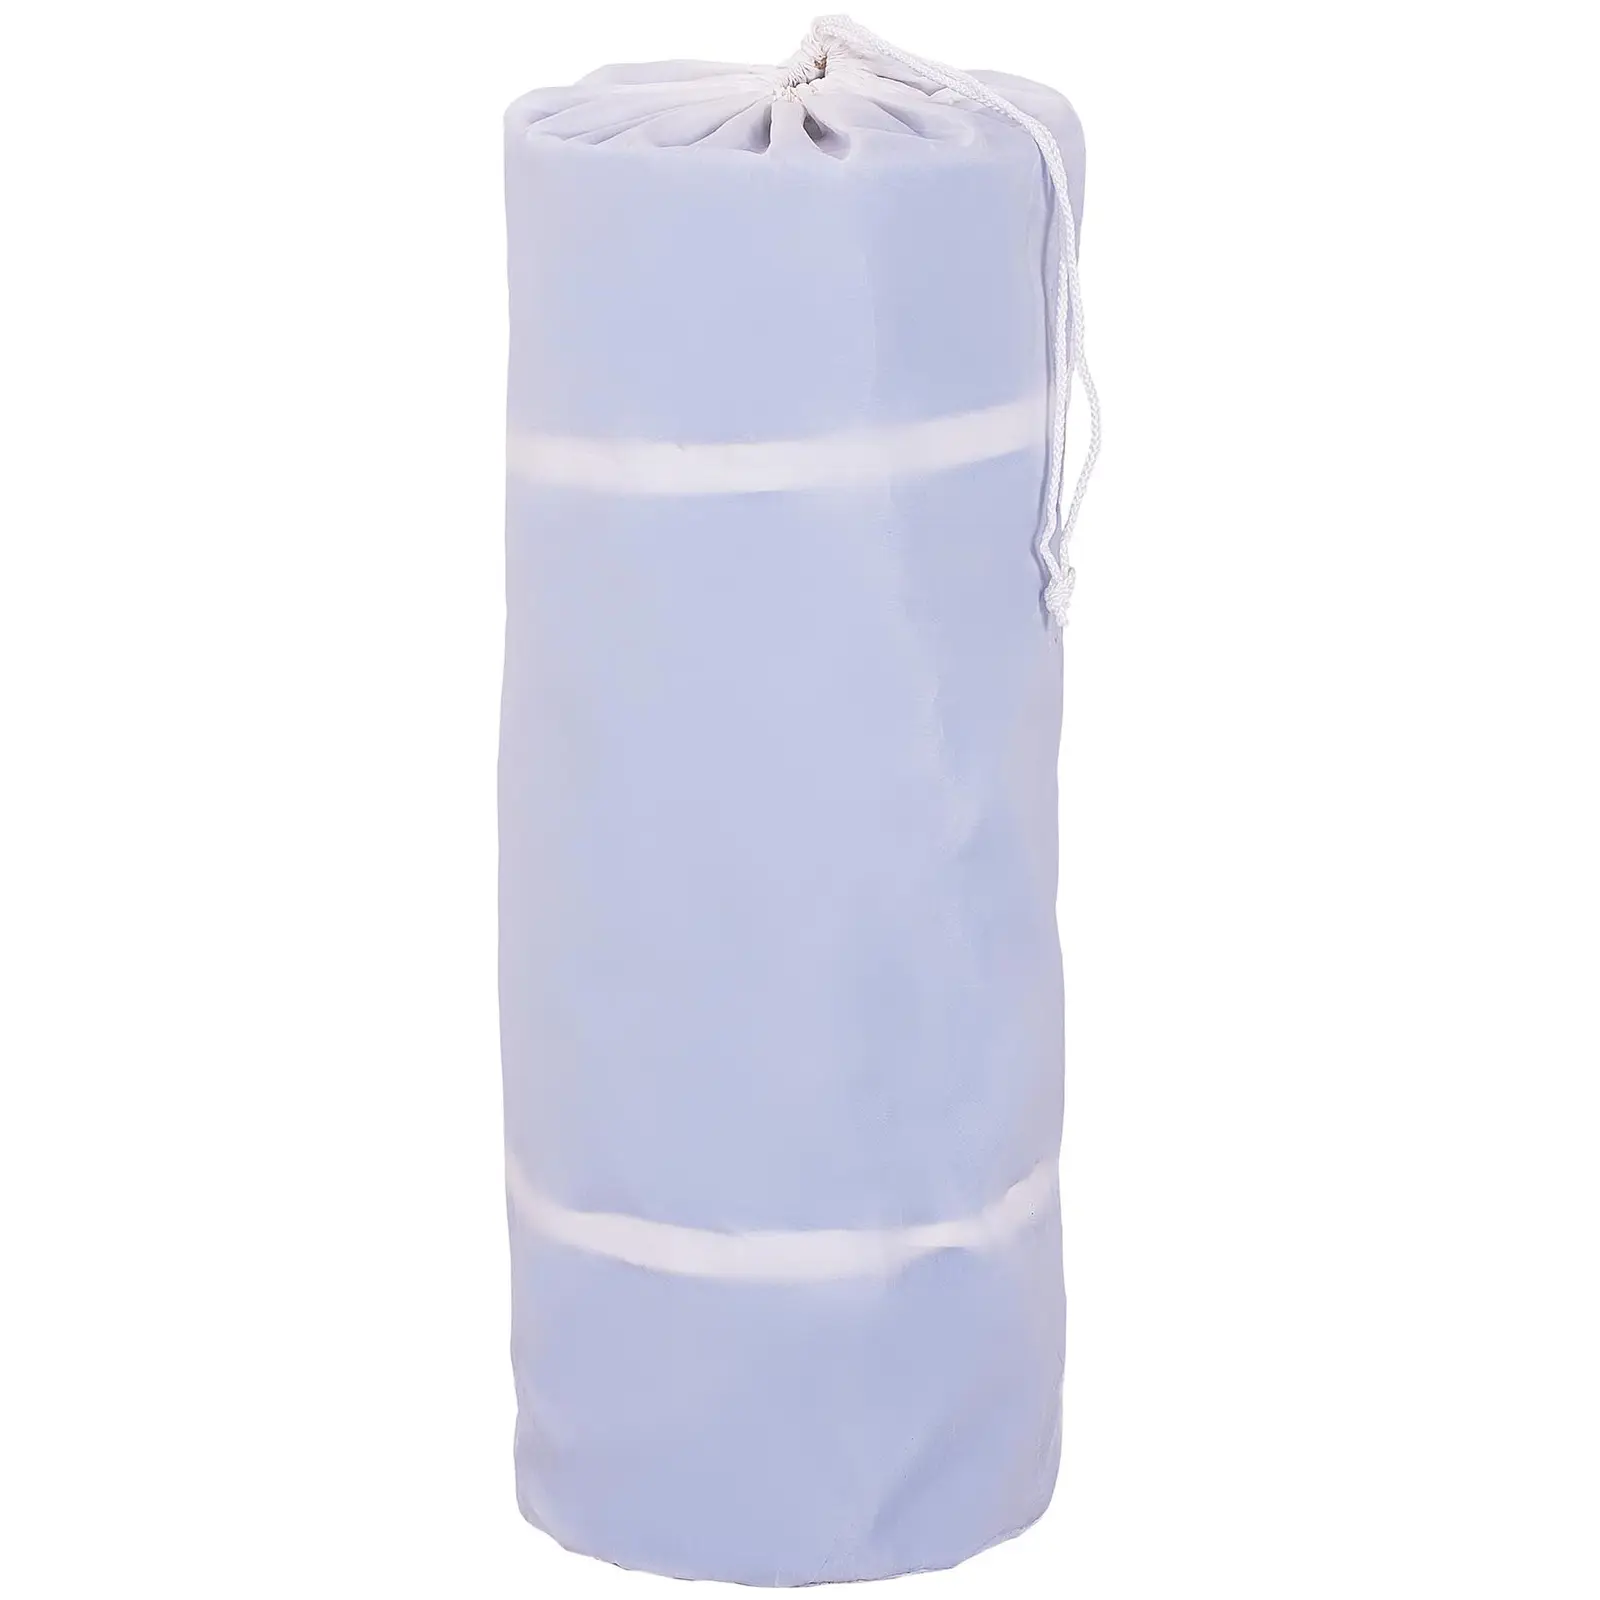 Felfújható tornaszőnyeg készlet pumpával - 300 x 100 x 20 cm - 150 kg - kék/fehér